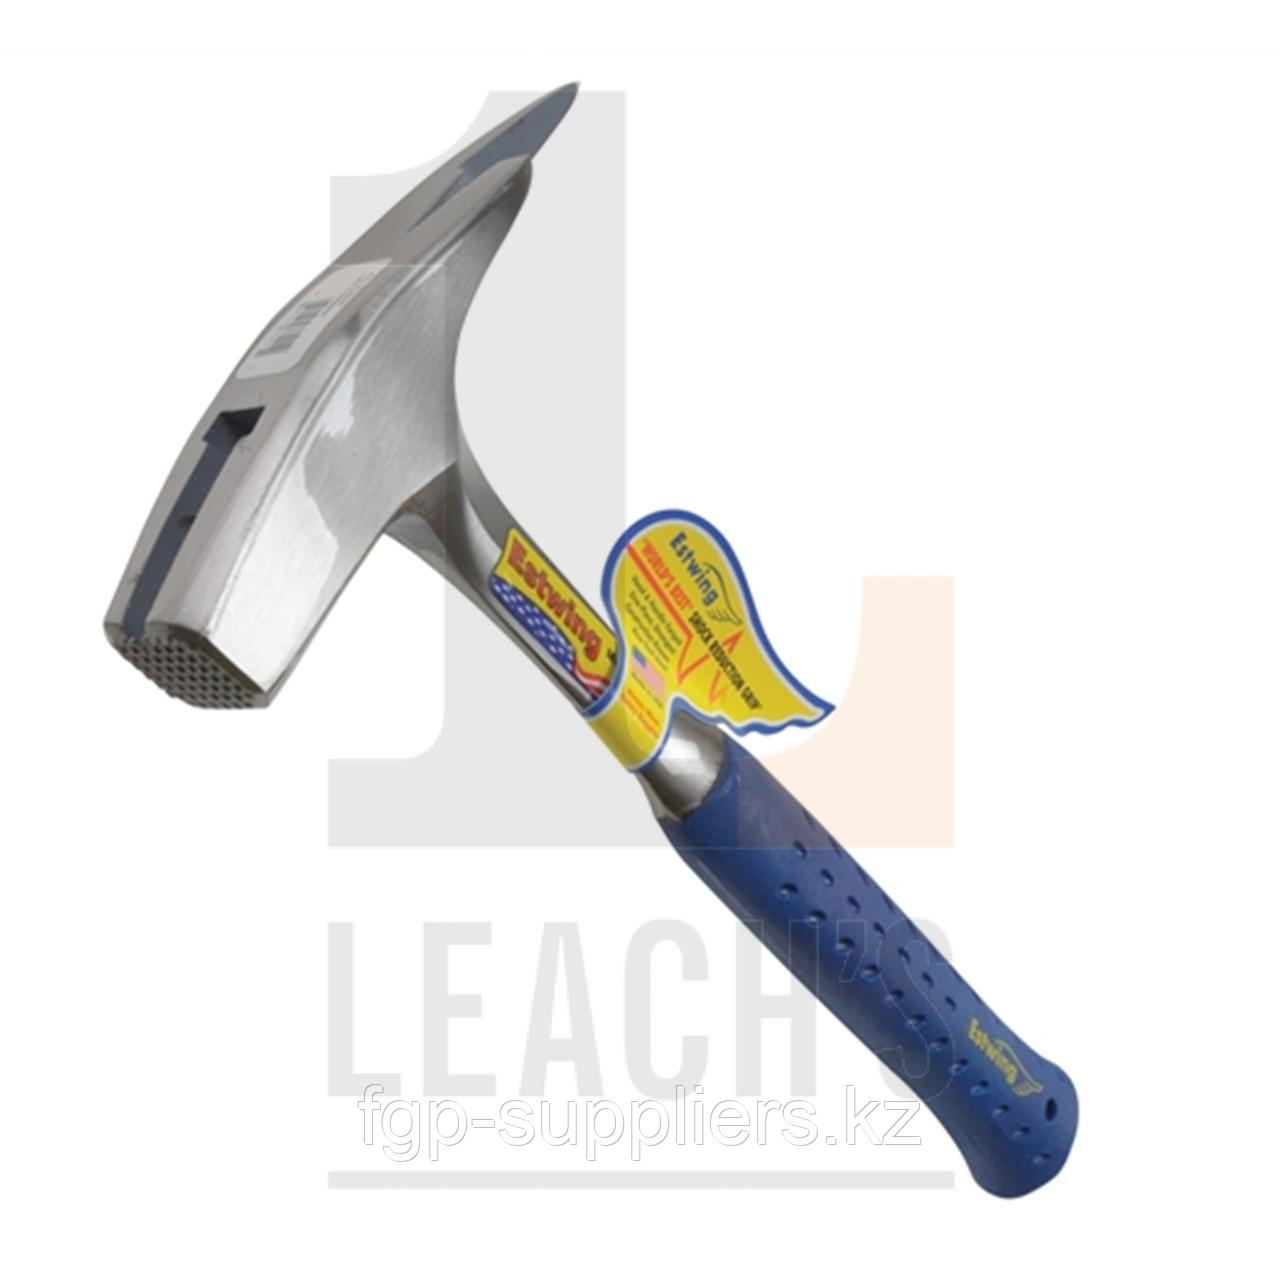 Estwing Hammer with Podger Claw - Vinyl Handle, Milled Face / Estwing кровельный молоток с когтем - виниловая рукоять с вальцованной поверхностью